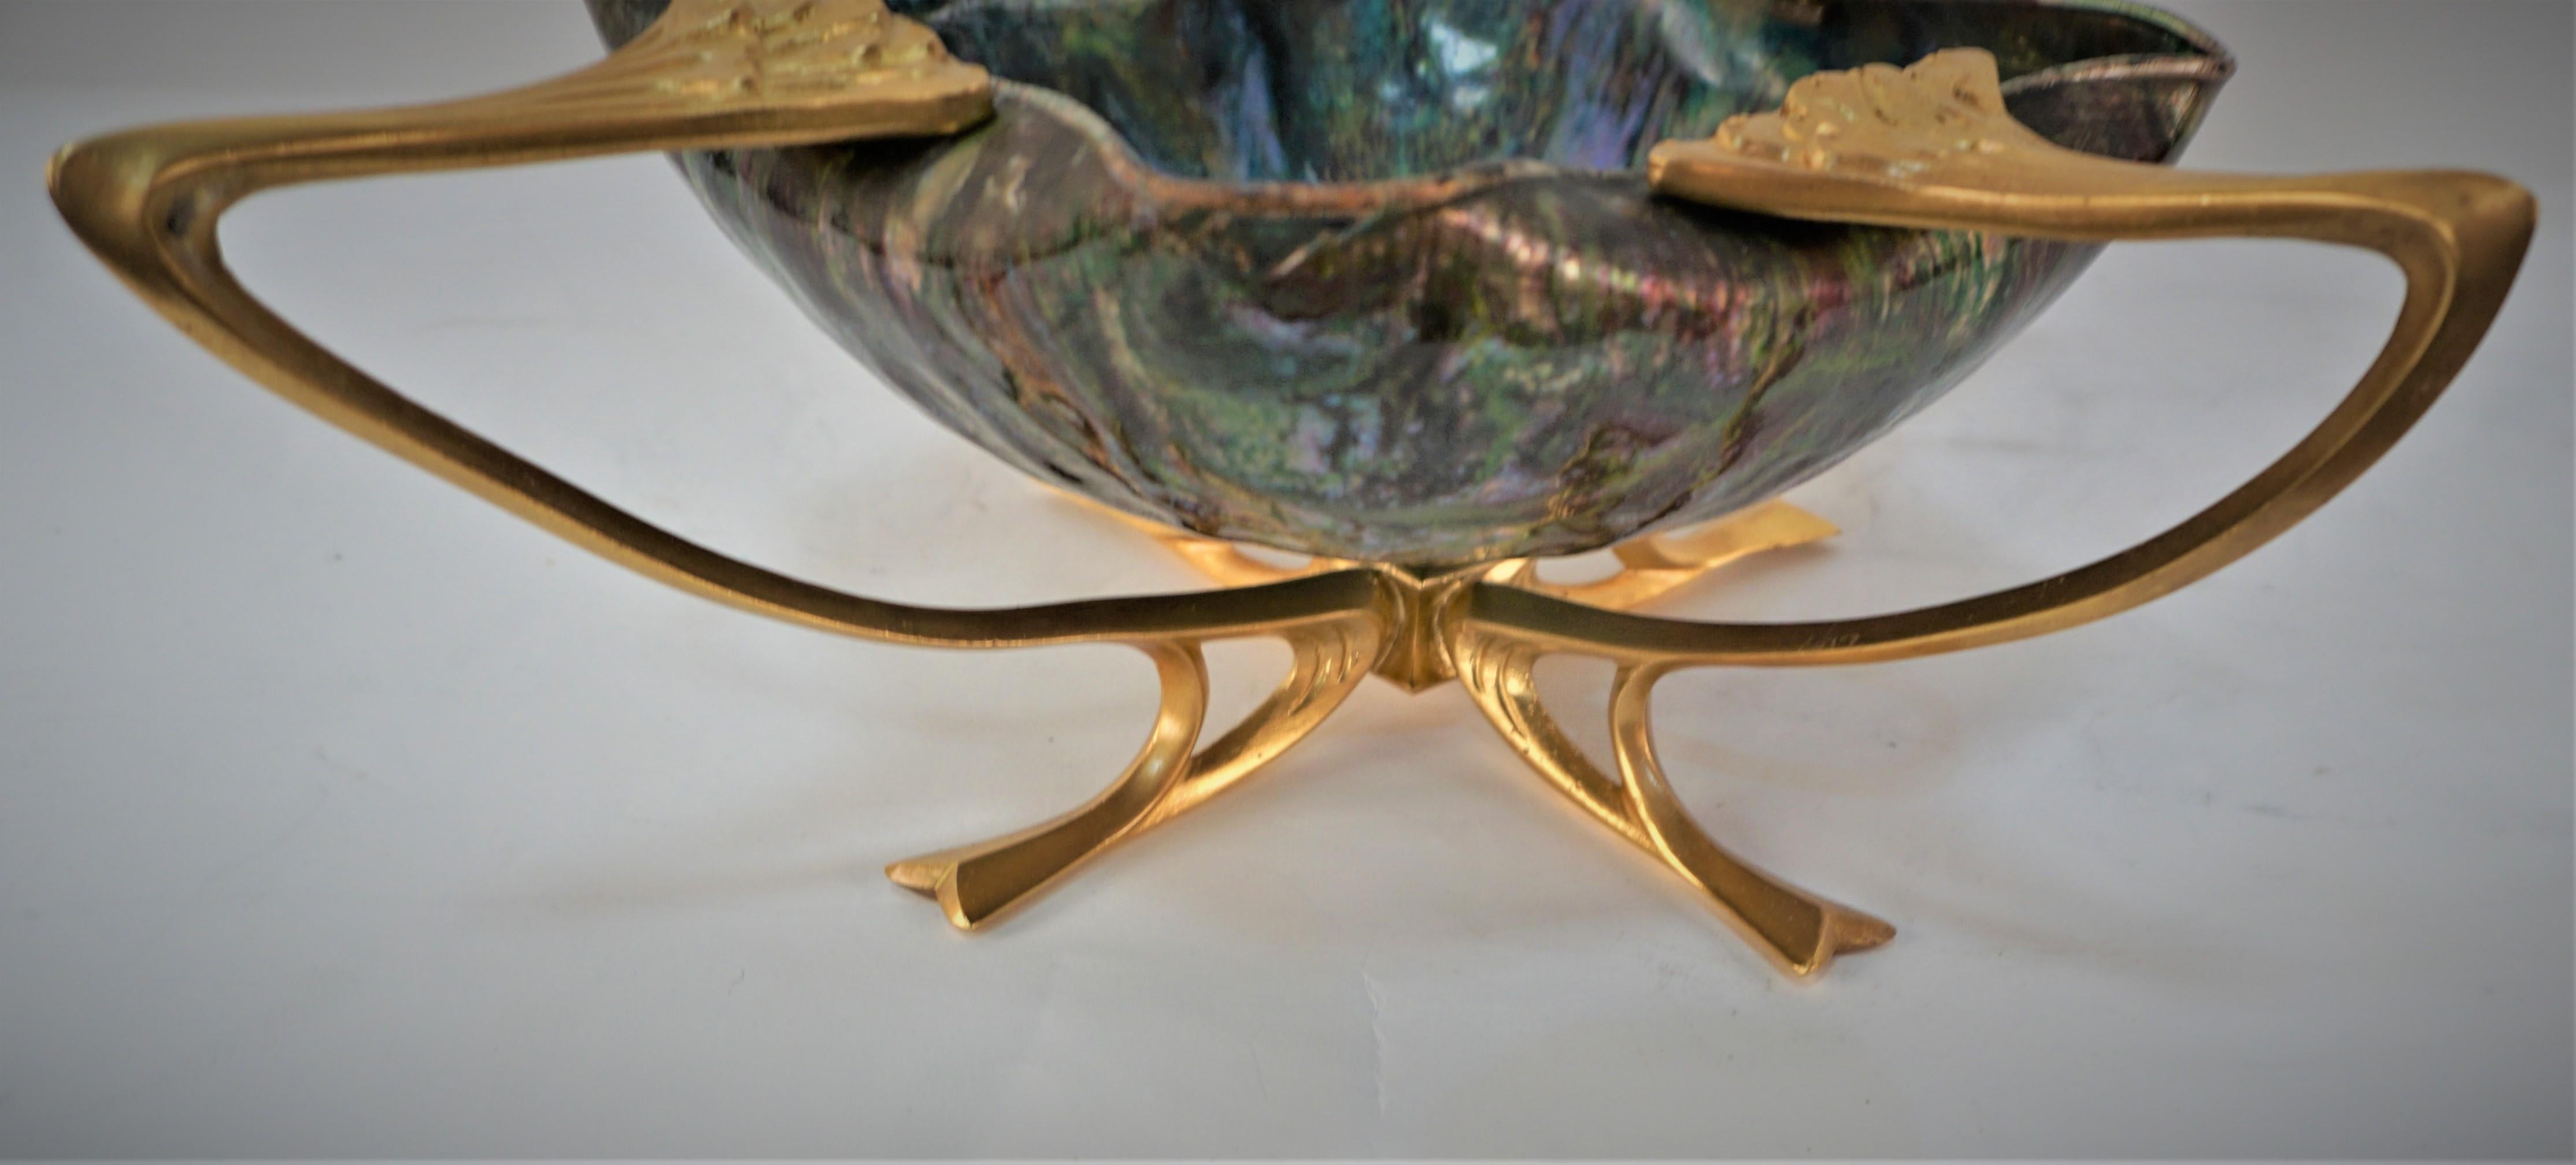 Art Nouveau gilt bronze base with enamel over copper center dish.